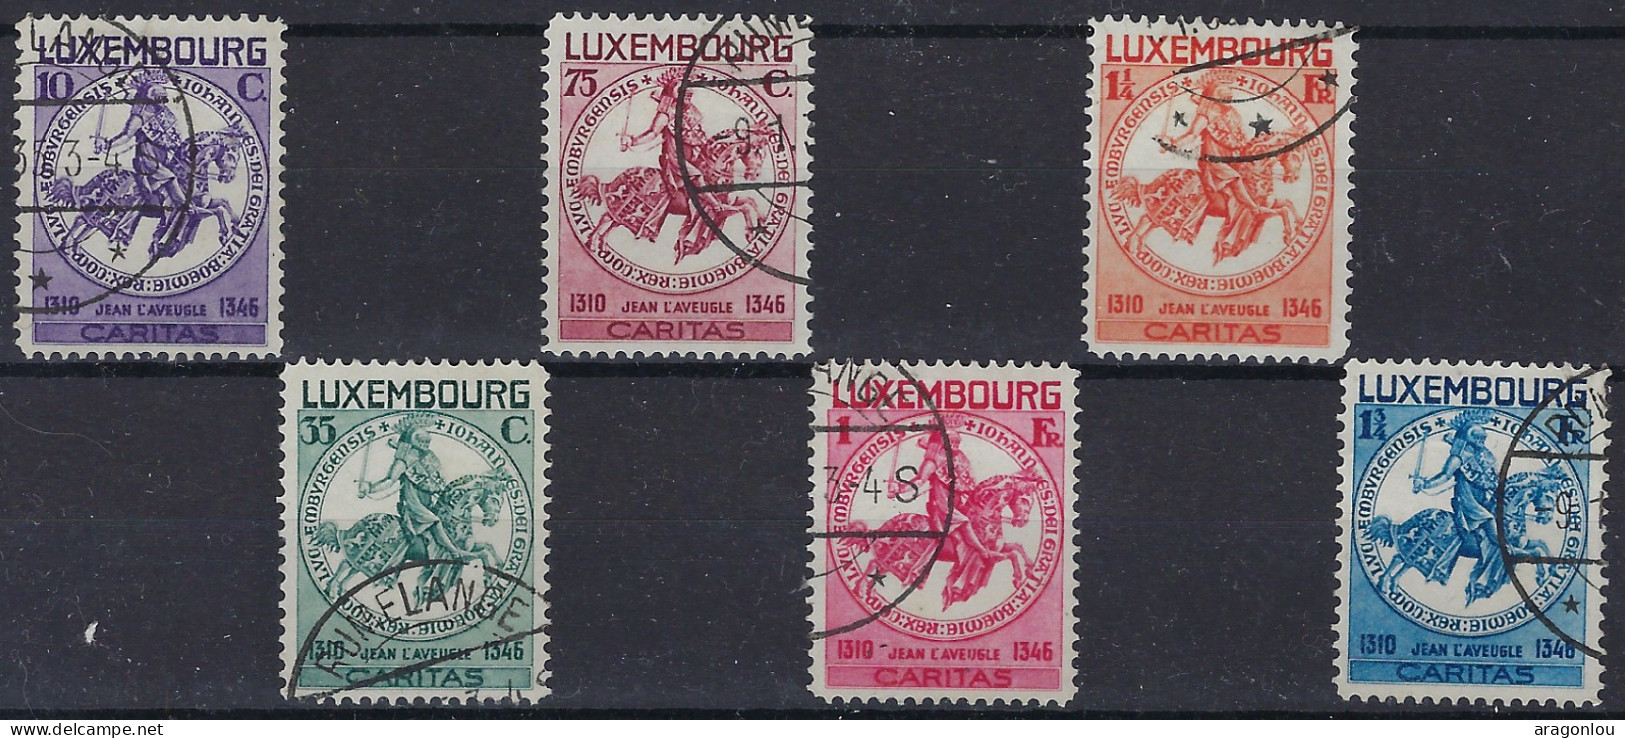 Luxembourg - Luxemburg - Timbres  1934  Série    Sceau De Jean L'Aveugle    °   VC.200,- - Gebruikt